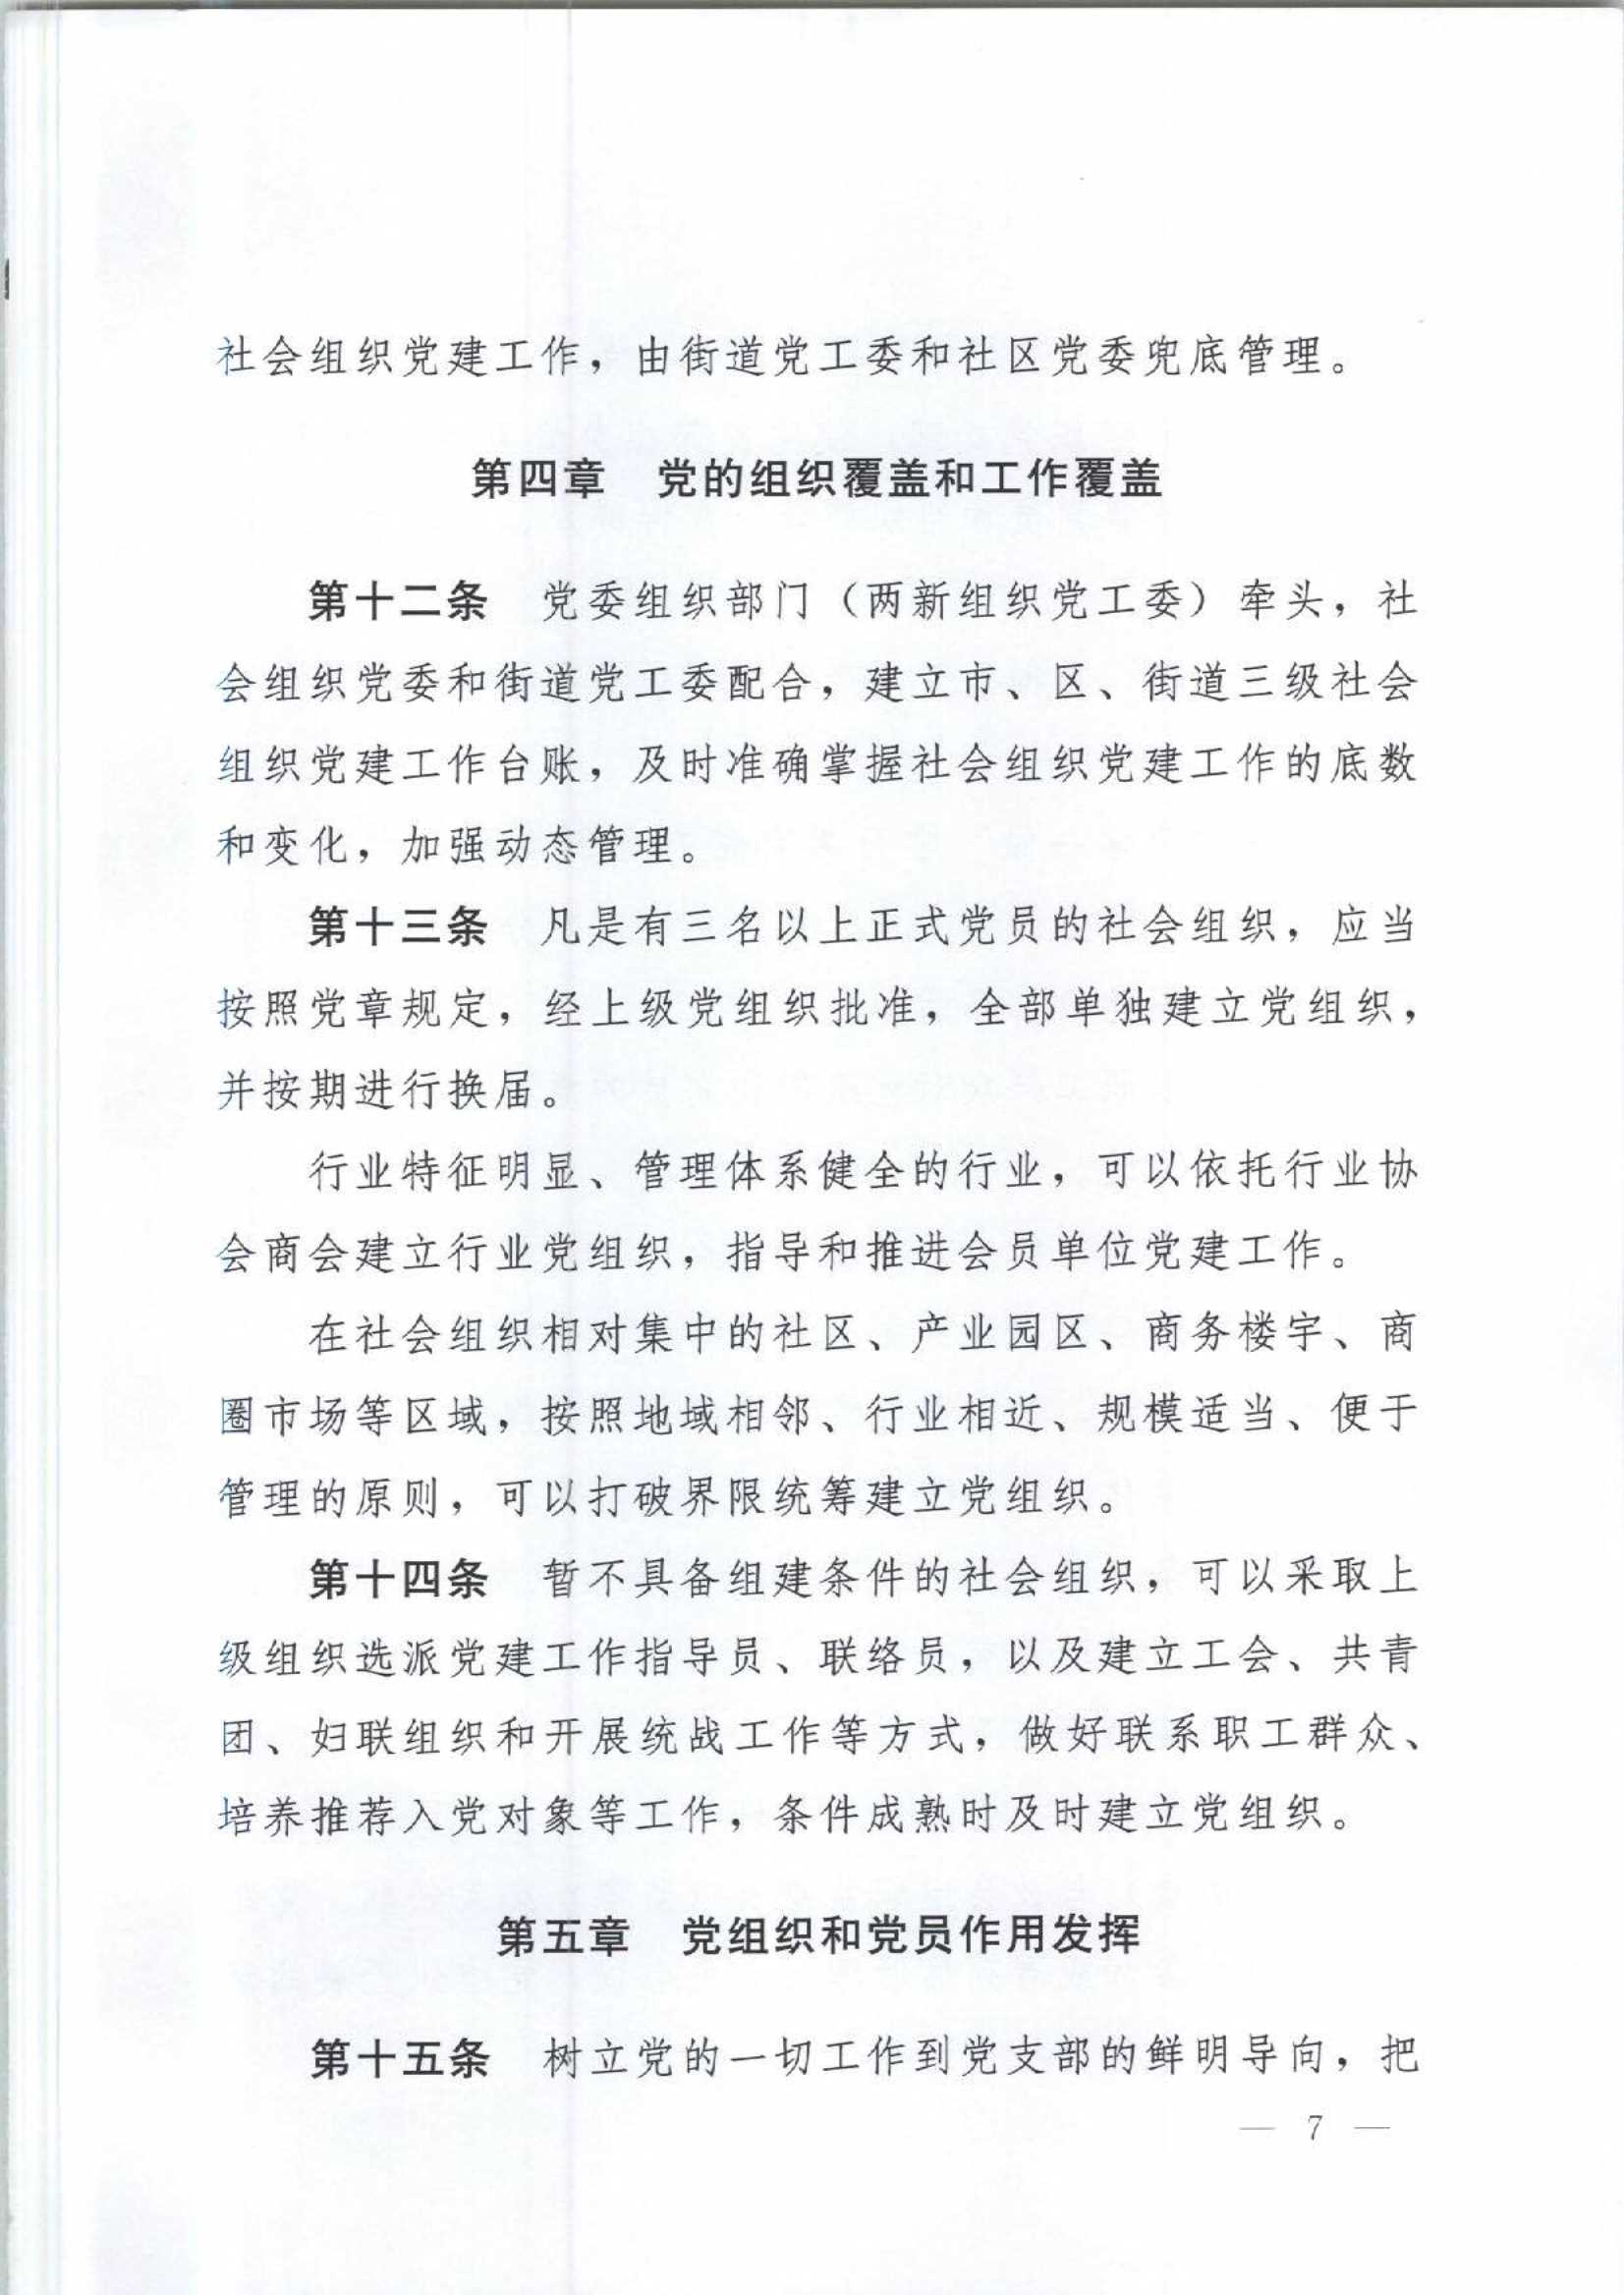 4.深圳市社会组织党的建设工作规定_7.Jpeg